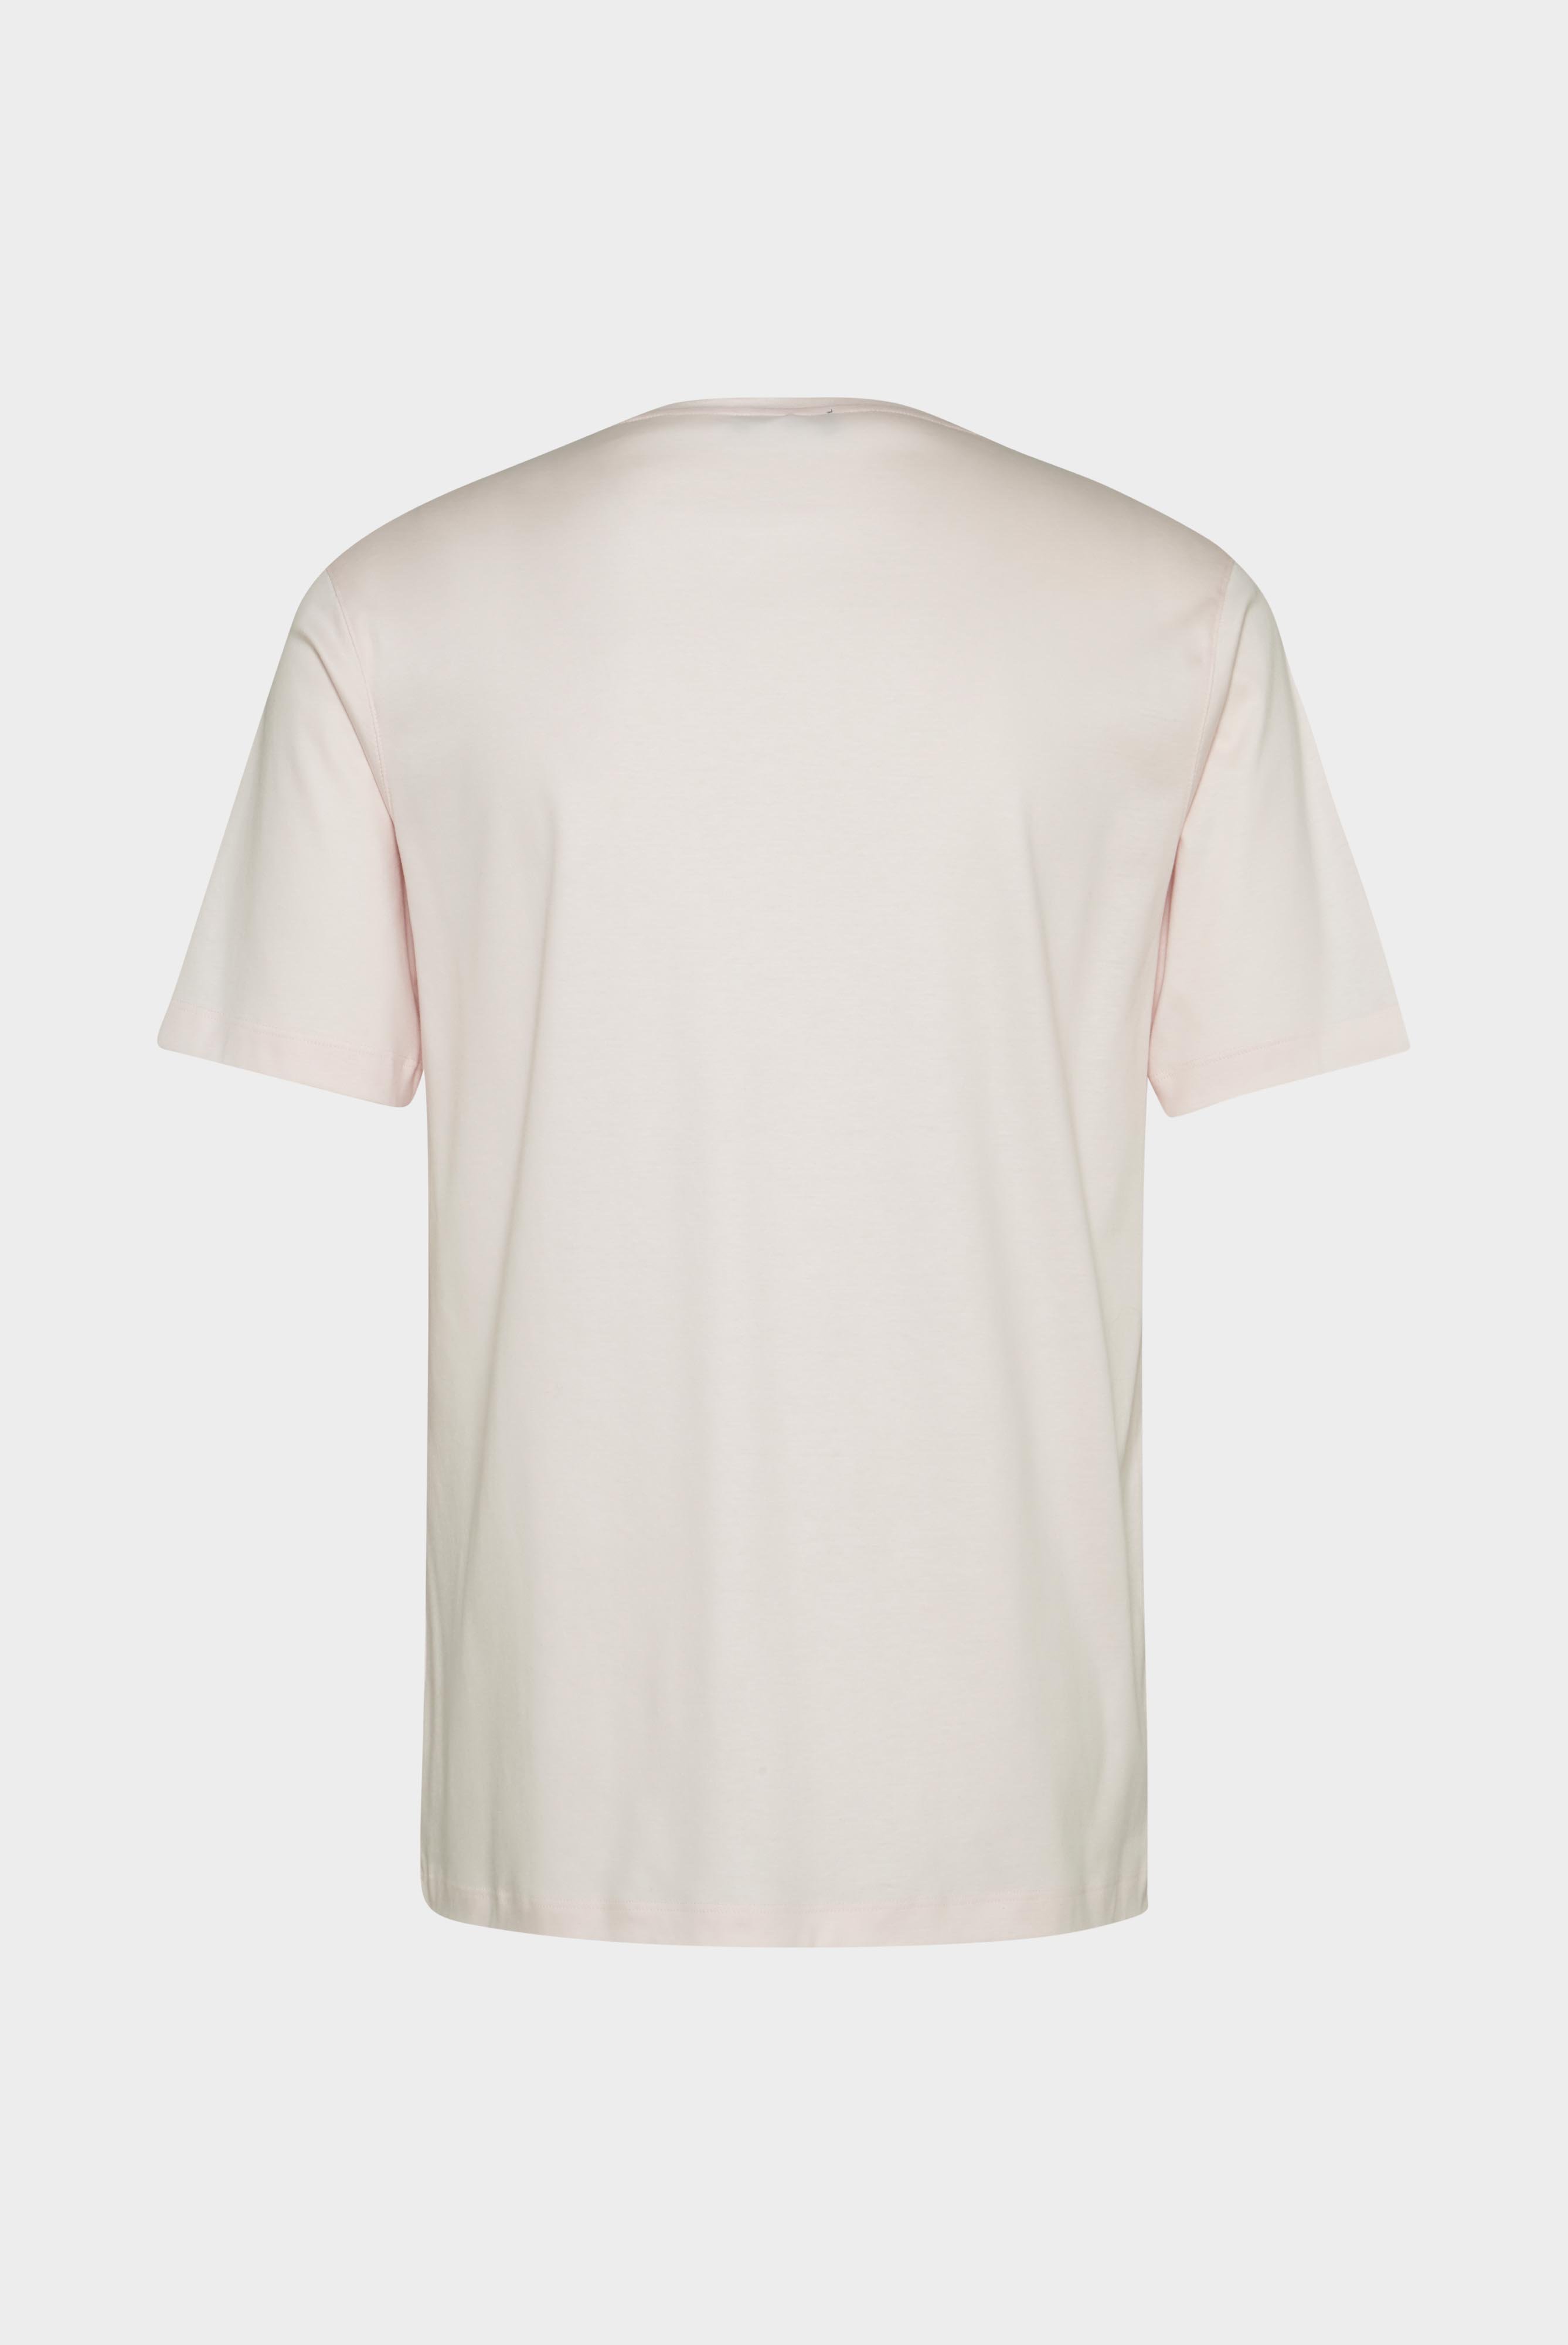 T-Shirts+Oversize Jersey T-Shirt mit Brusttasche+20.1776.GZ.180031.510.L